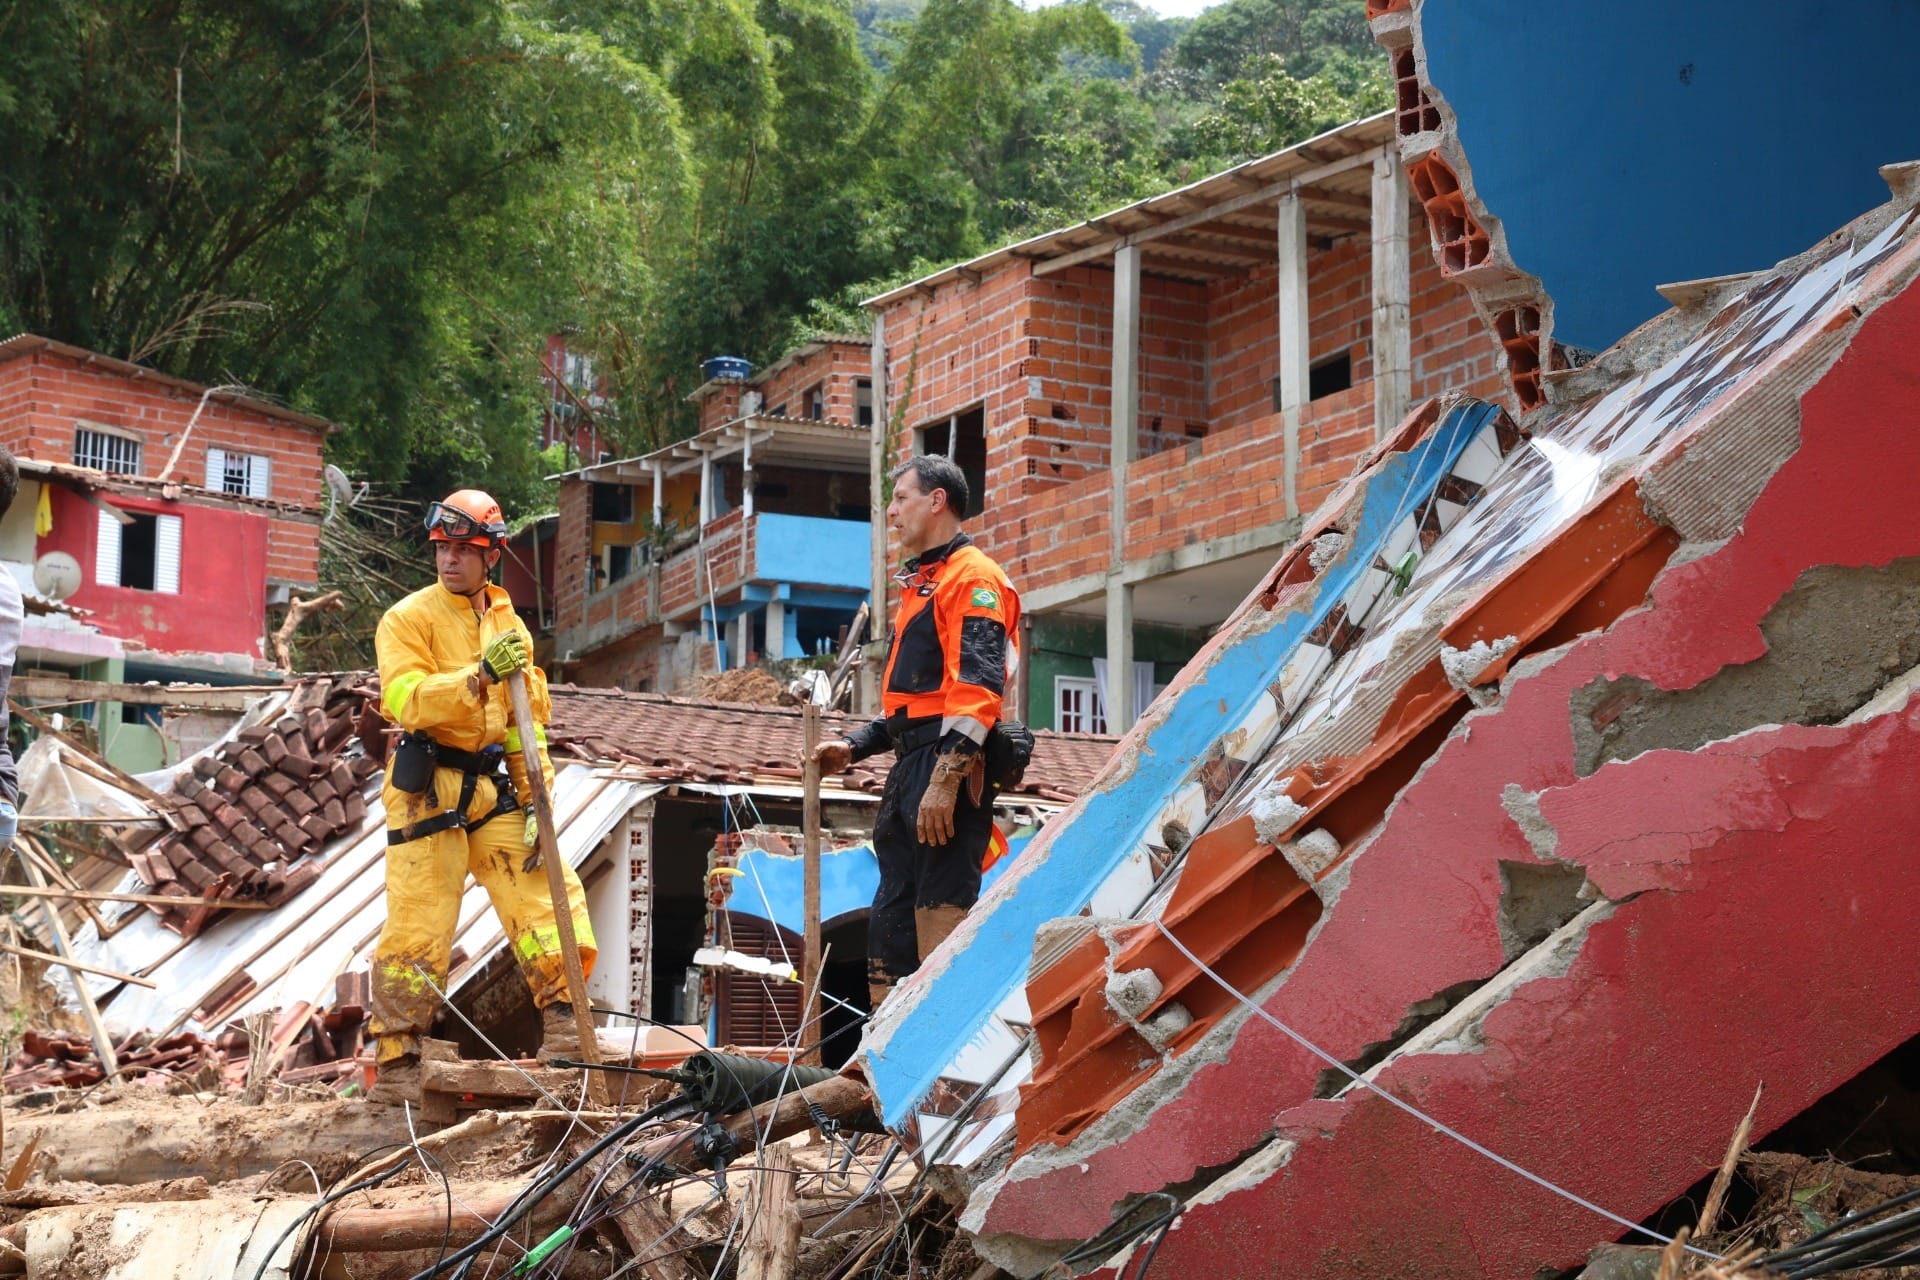 PM resgata capivara no Fórum de Taubaté, Vale do Paraíba e Região